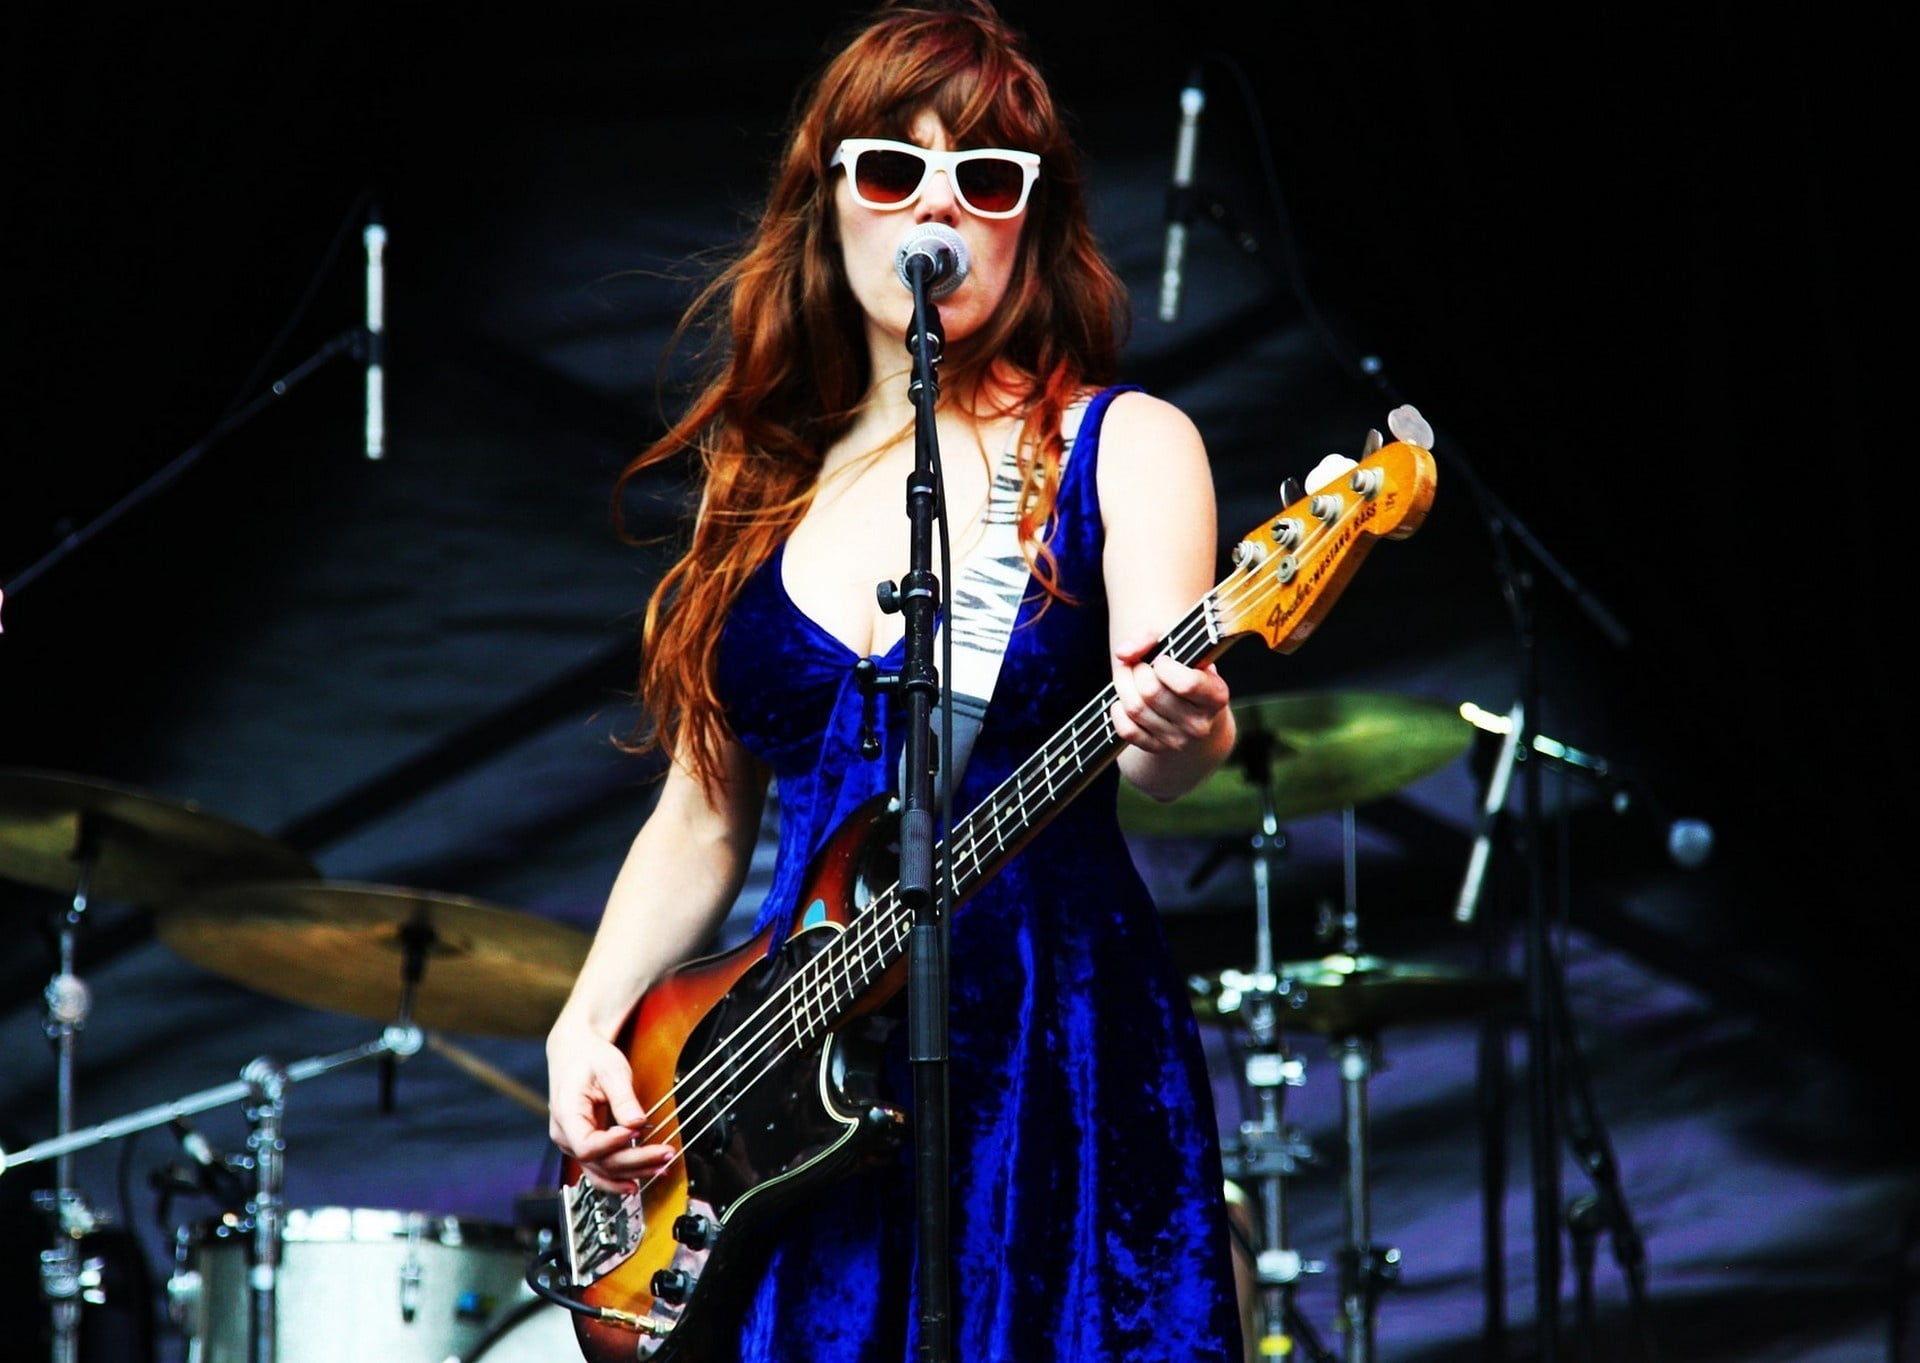 woman holding bass guitar wearing blue sleeveless dress